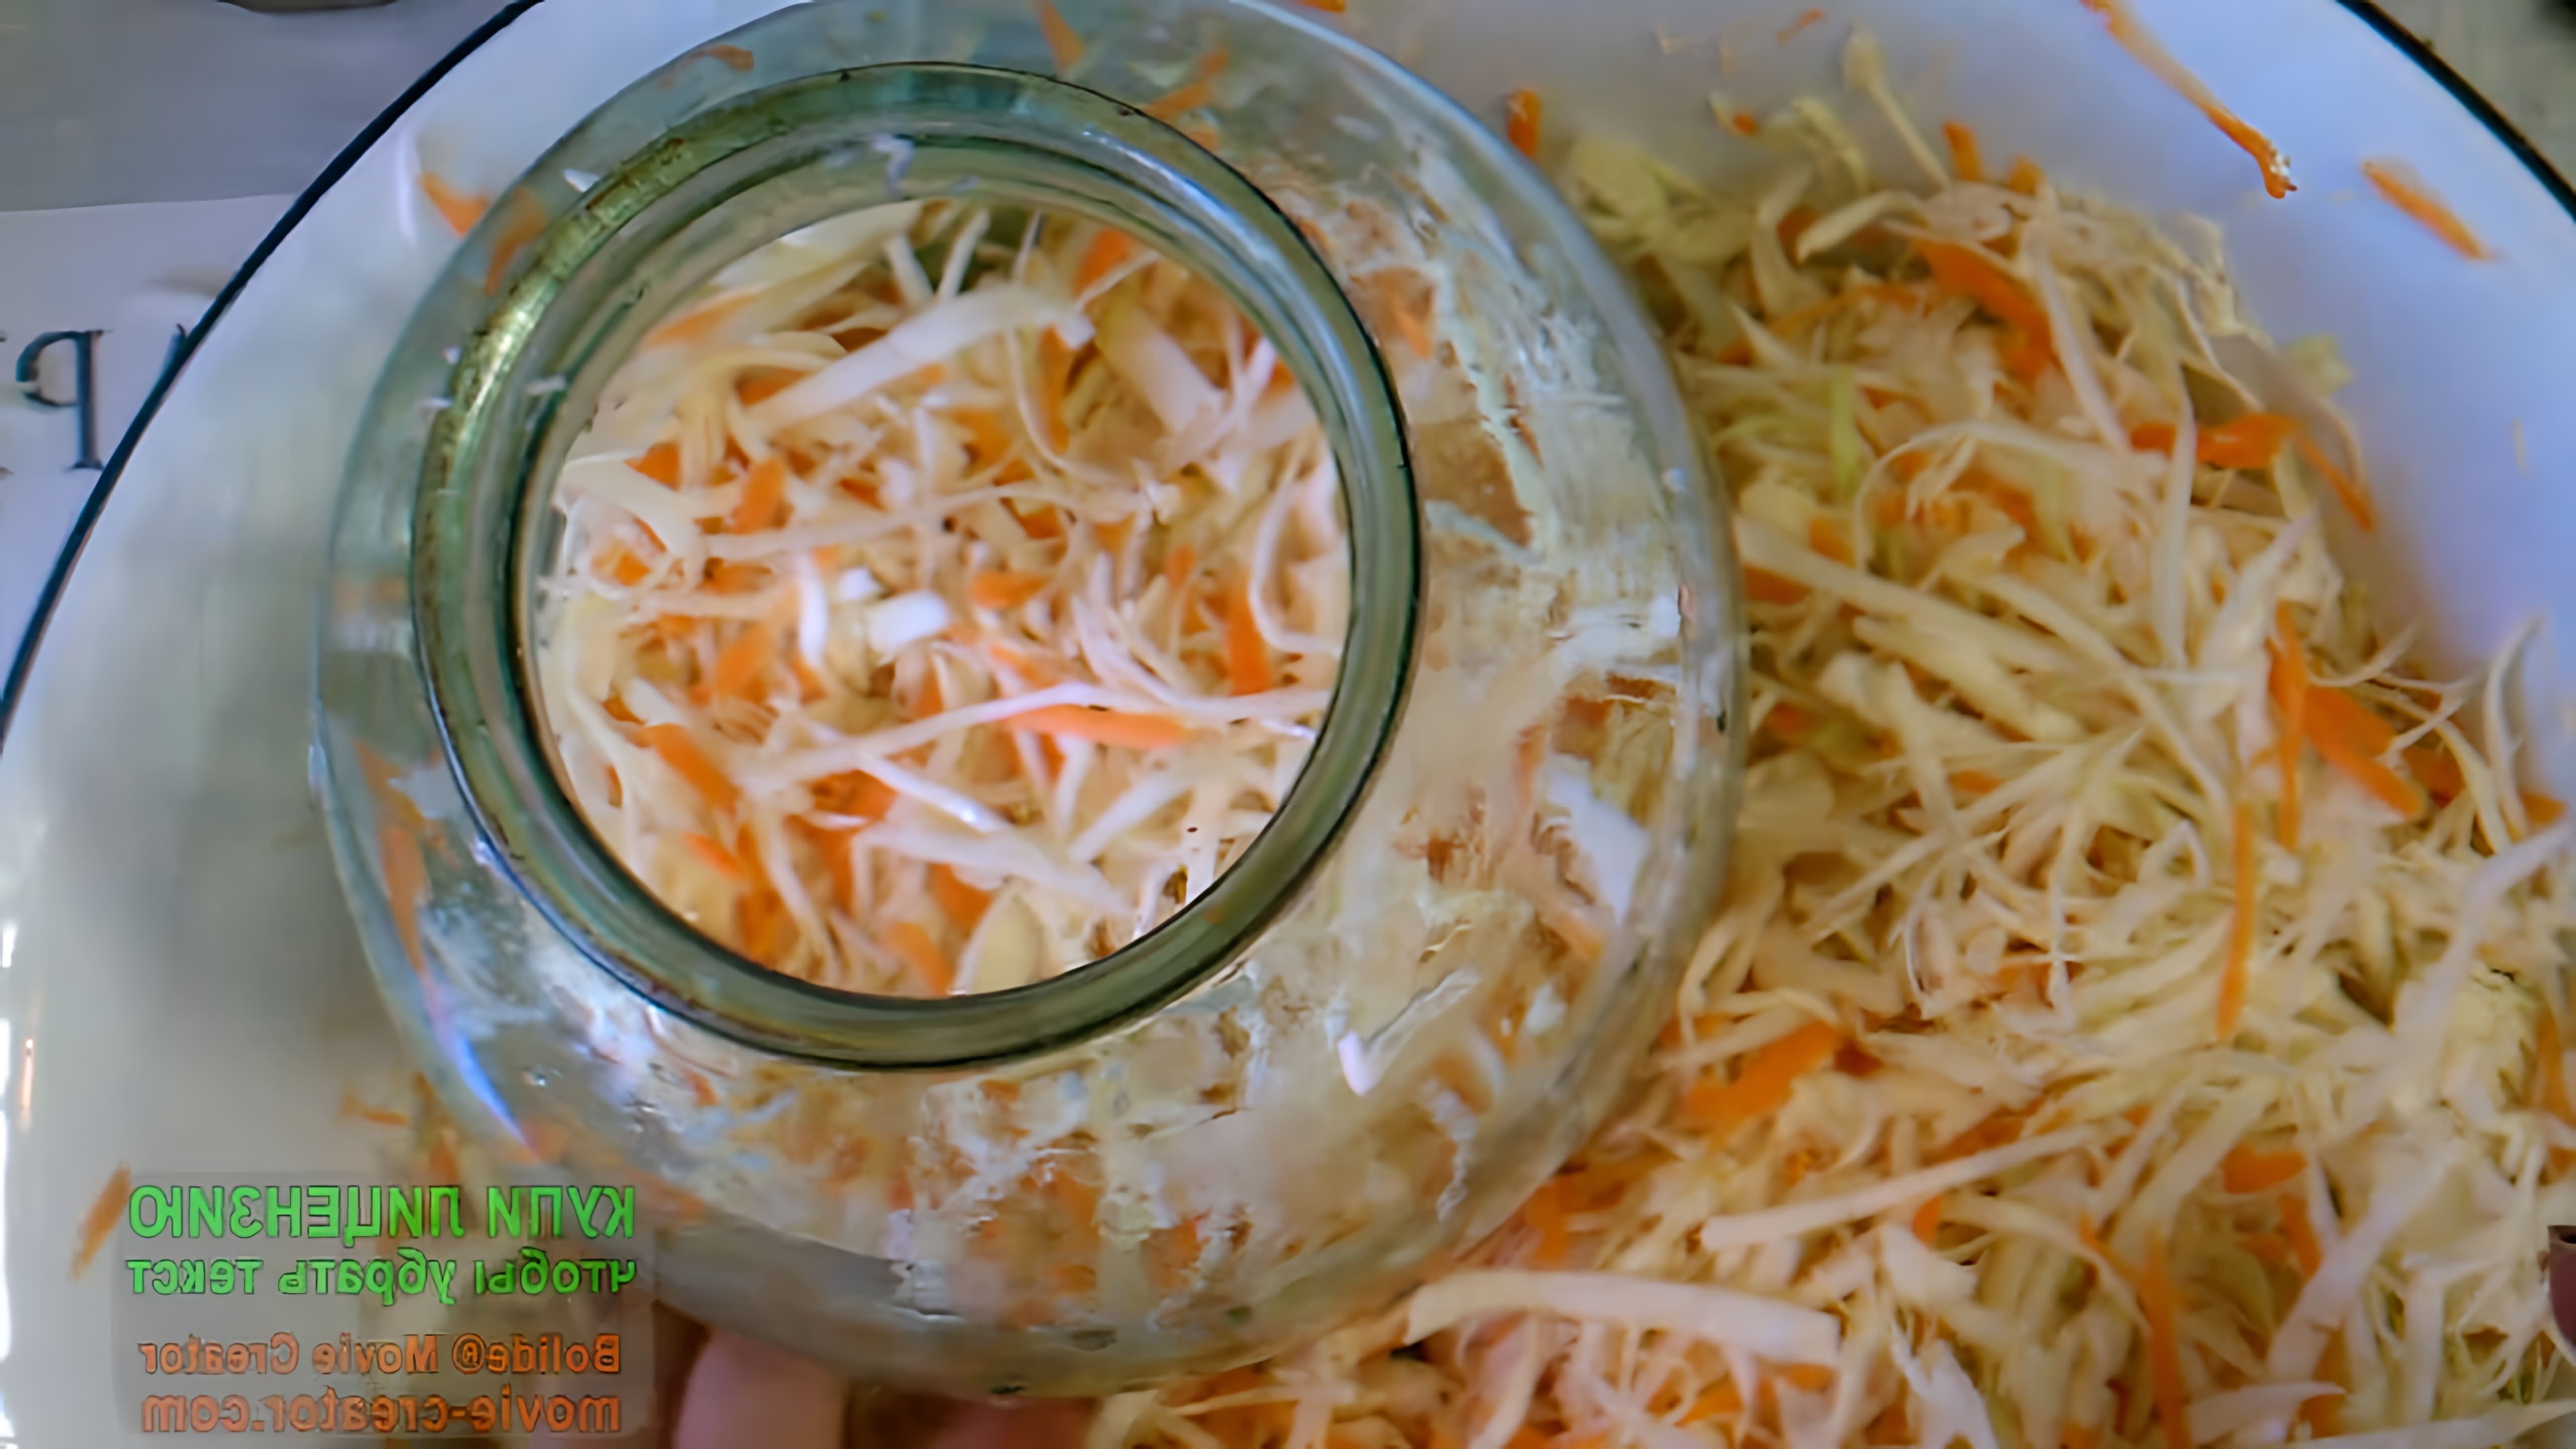 В этом видео демонстрируется процесс приготовления квашеной капусты без уксуса